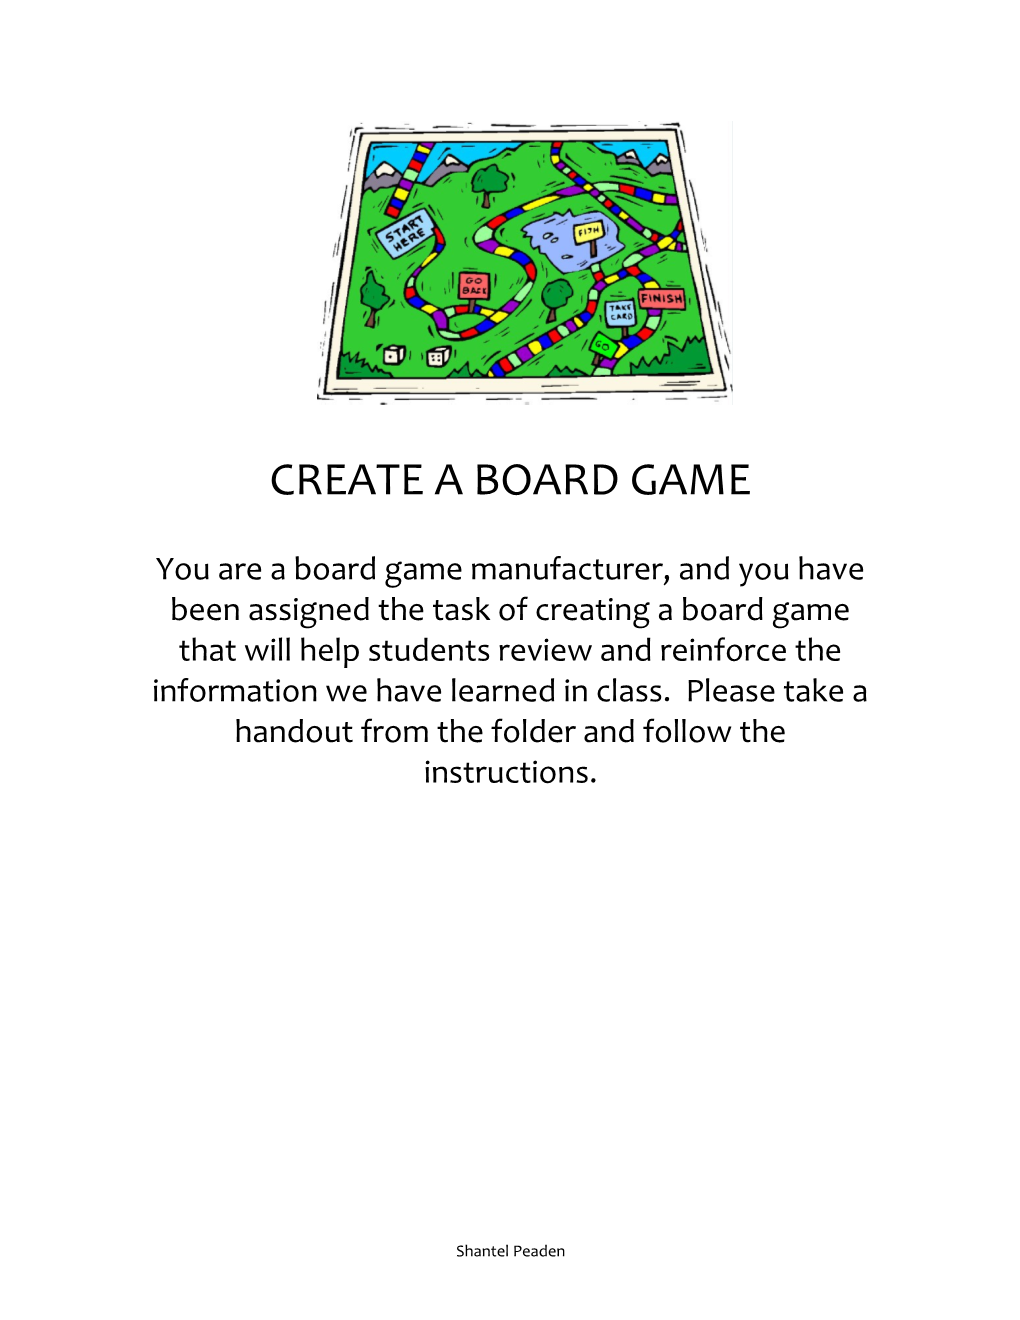 Create a Board Game